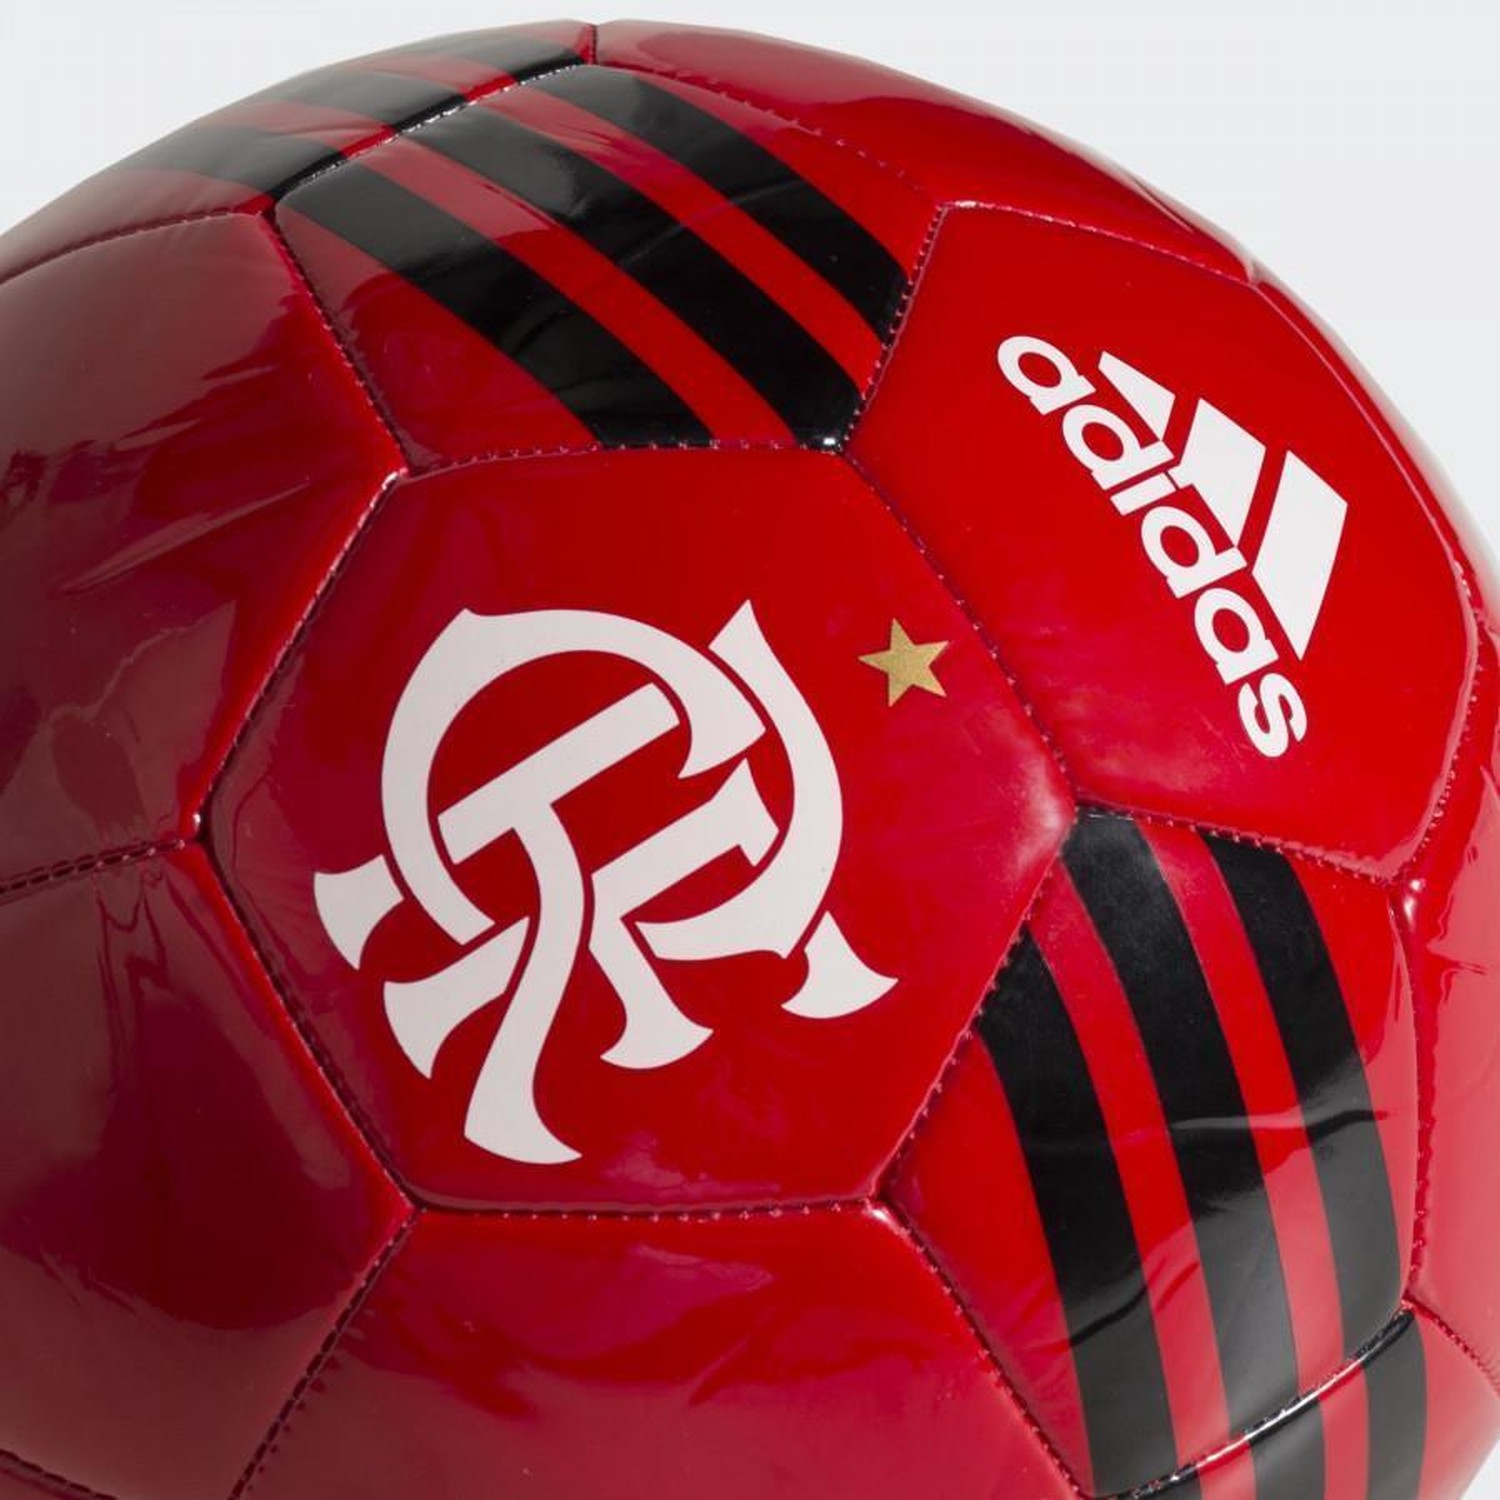 Bola Do Flamengo De Futebol Campo Oficial